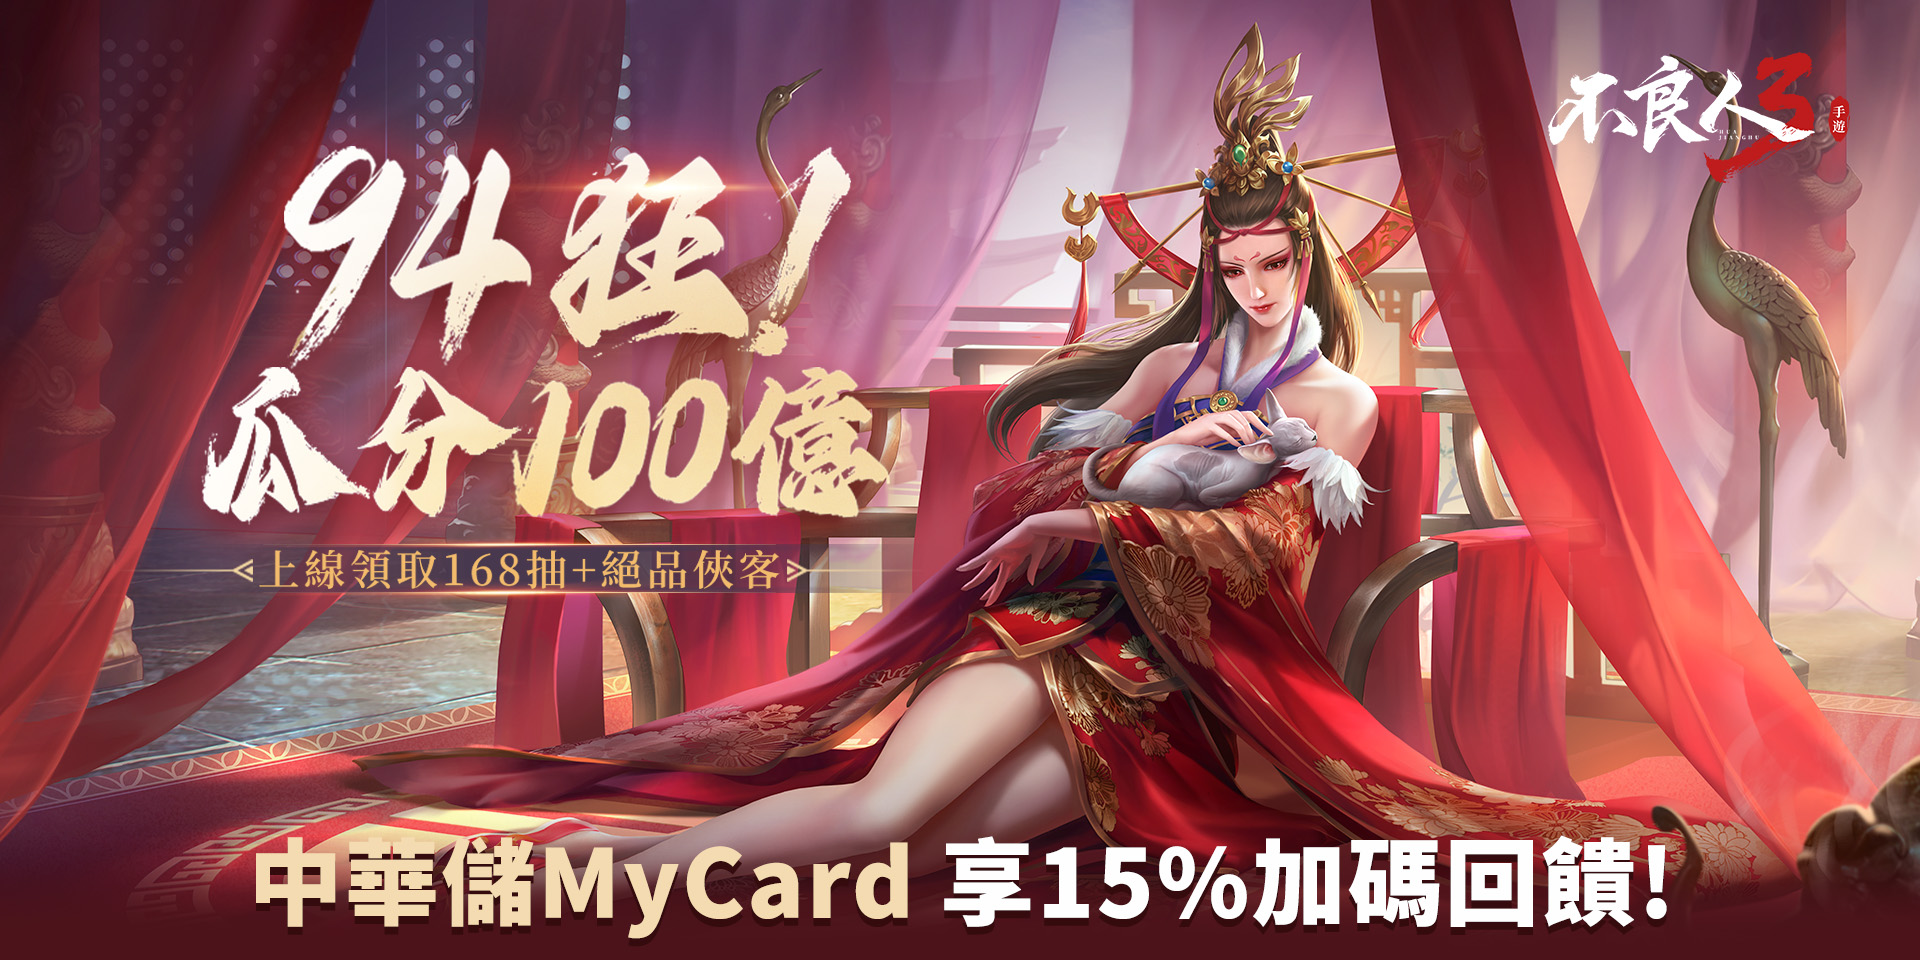   《不良人3》MyCard儲值享超值好禮回饋 | 中華電信